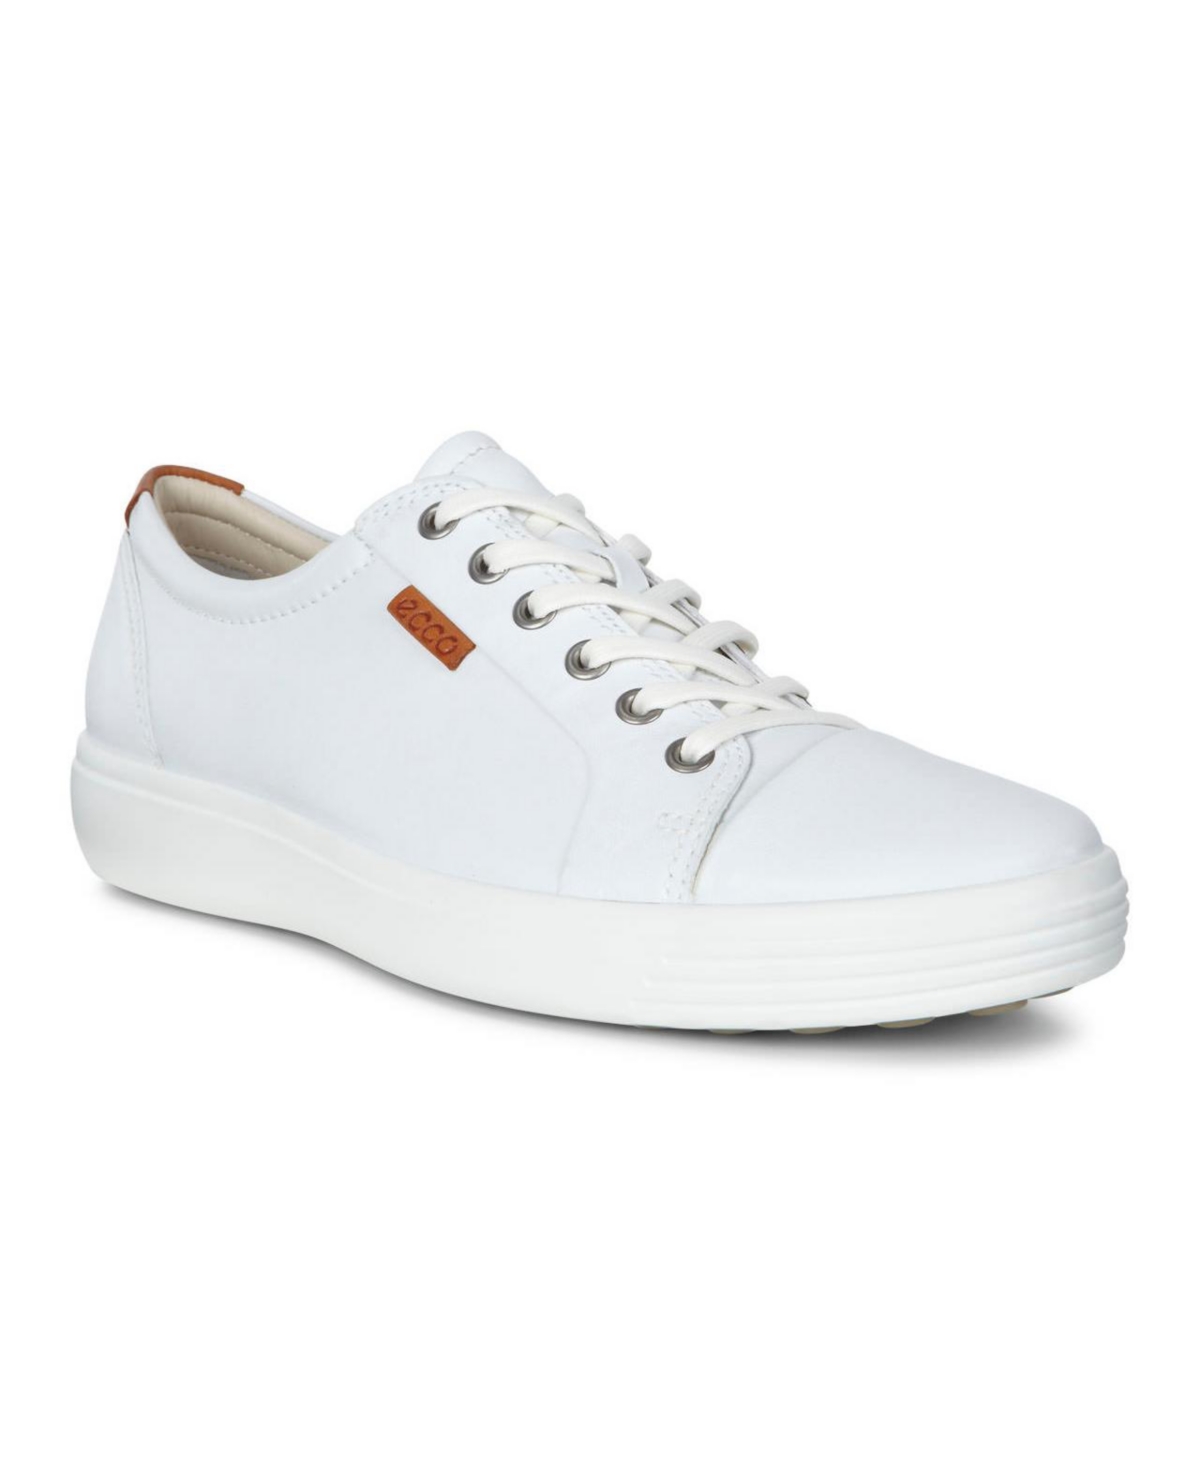 Men's Soft 7 Sneaker - White